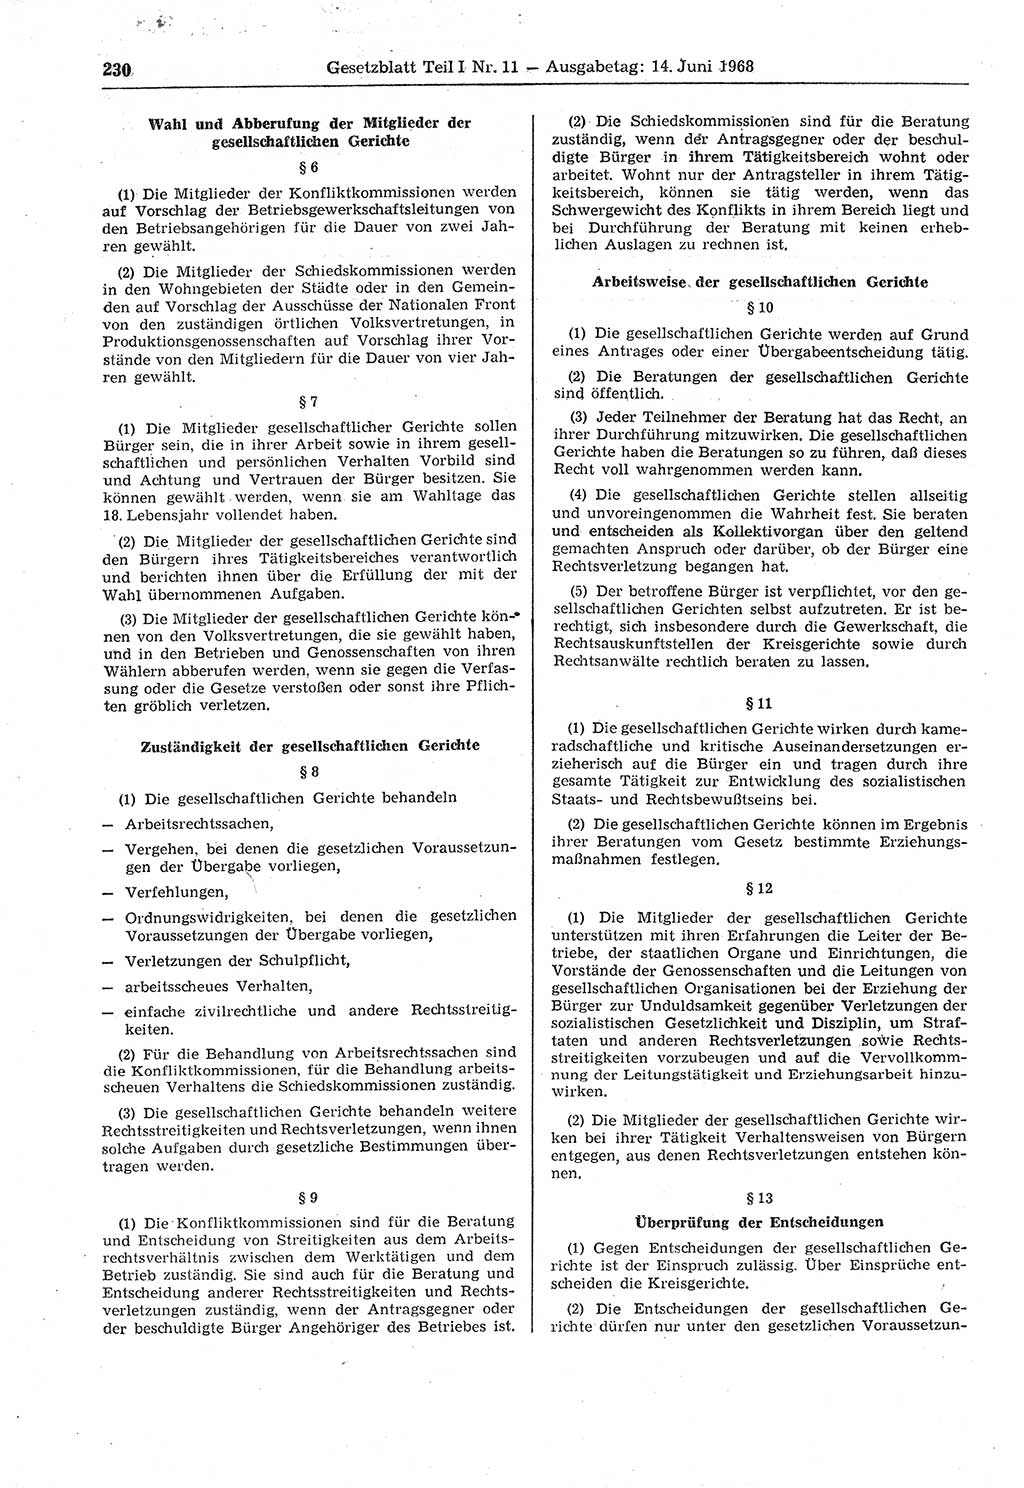 Gesetzblatt (GBl.) der Deutschen Demokratischen Republik (DDR) Teil Ⅰ 1968, Seite 230 (GBl. DDR Ⅰ 1968, S. 230)